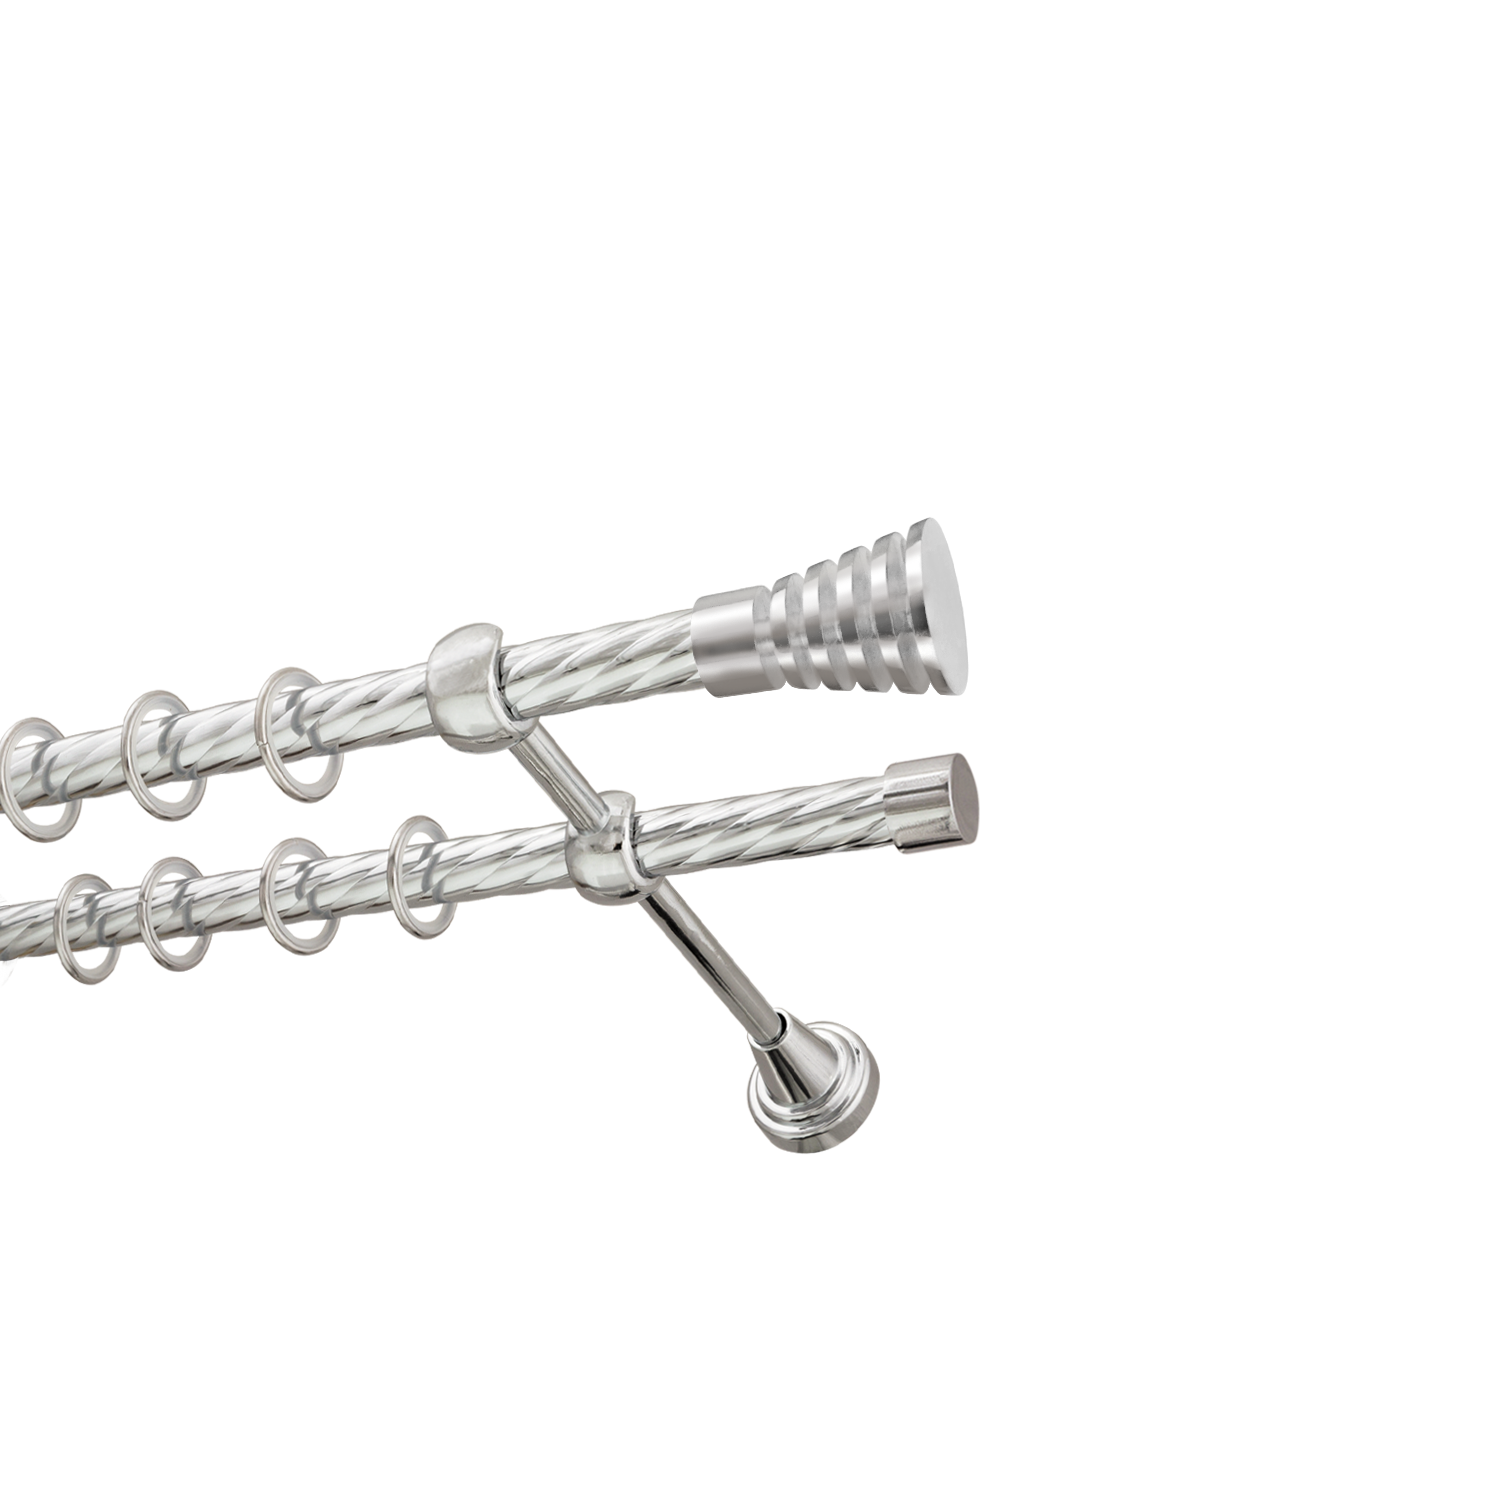 Металлический карниз для штор Верона, двухрядный 16/16 мм, серебро, витая штанга, длина 140 см